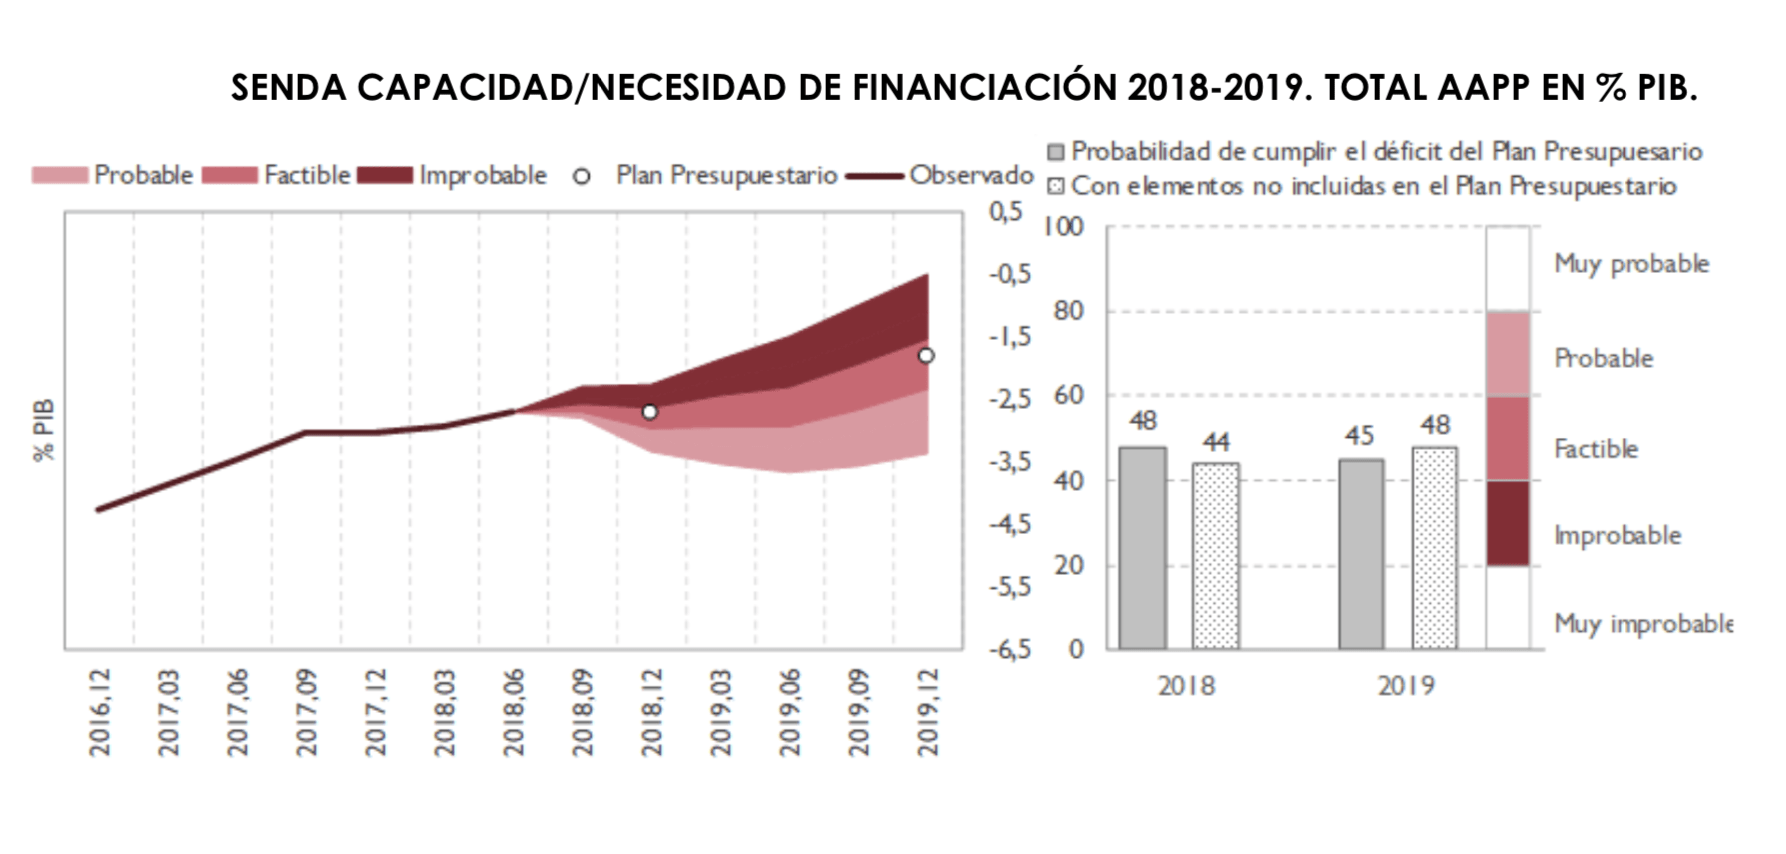 Capacidad/necesidad de financiación de las Administraciones públicas 2018-2019